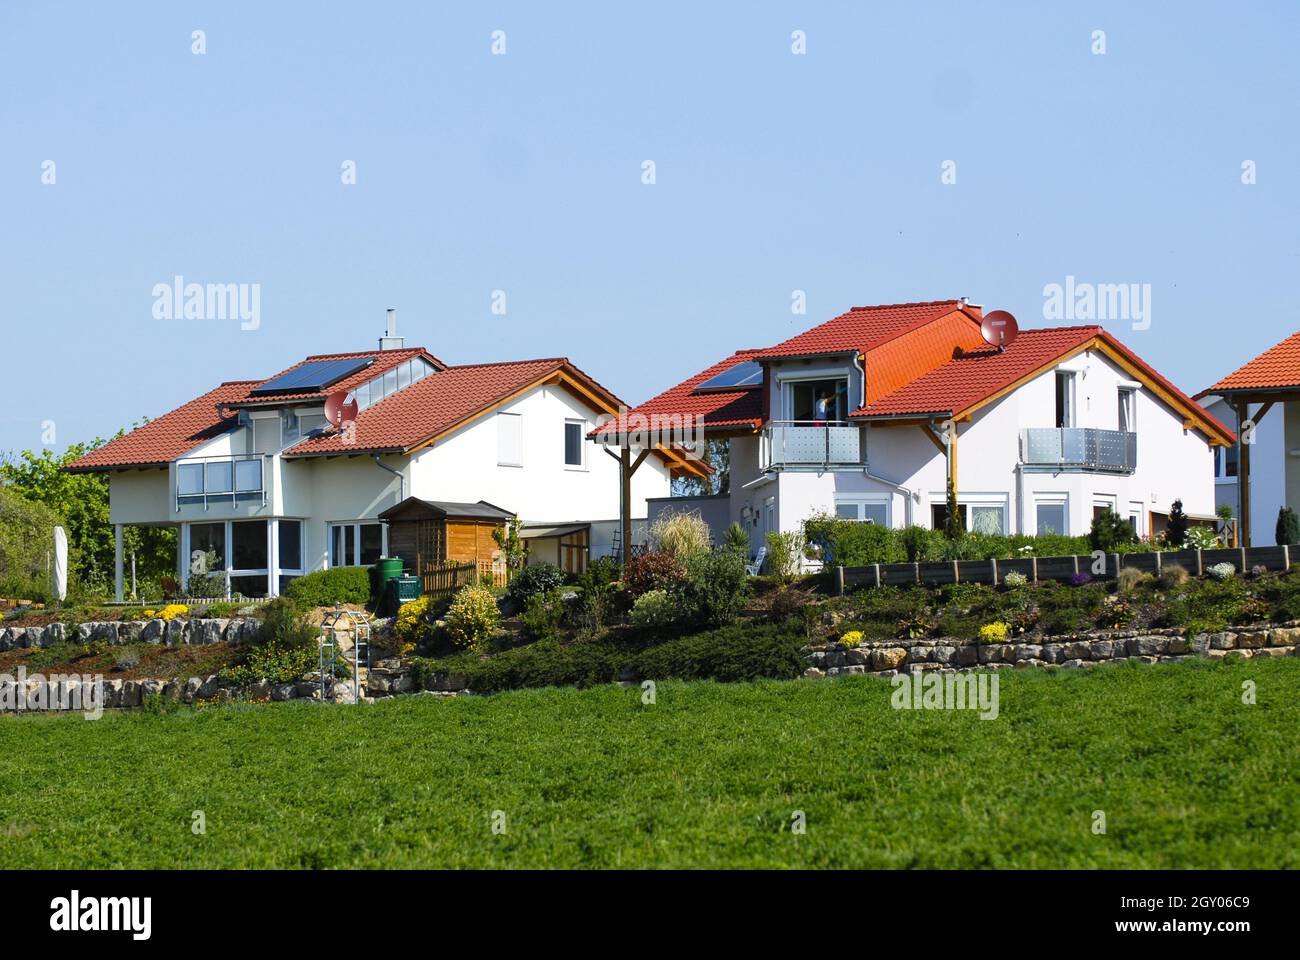 single-family houses, Germany Stock Photo